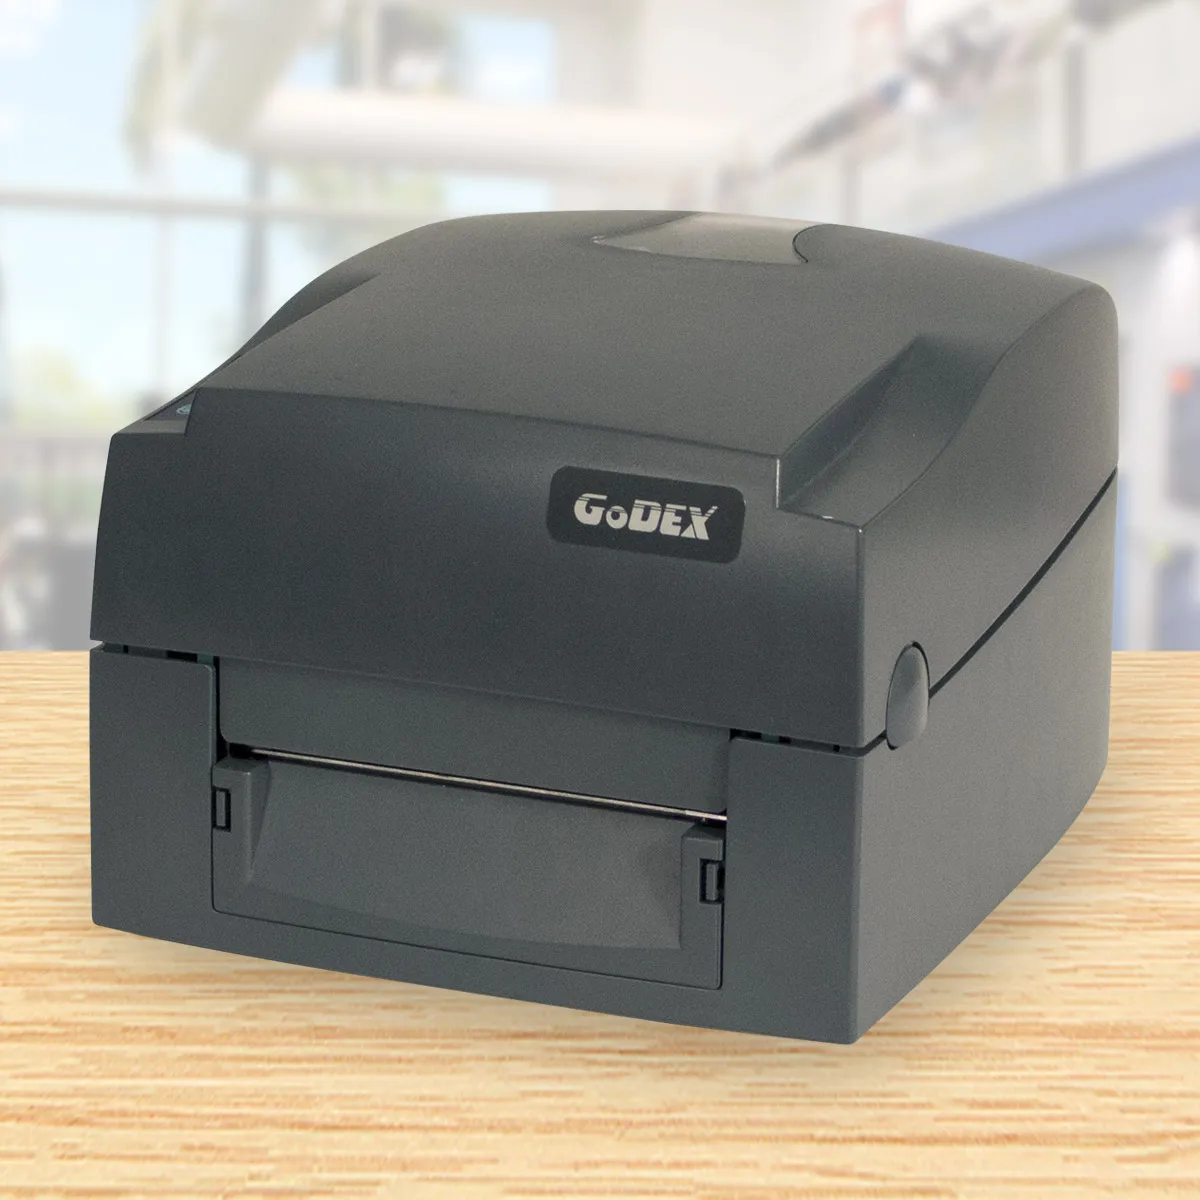 Godex g800. Gd500 Godex. Принтер g300.